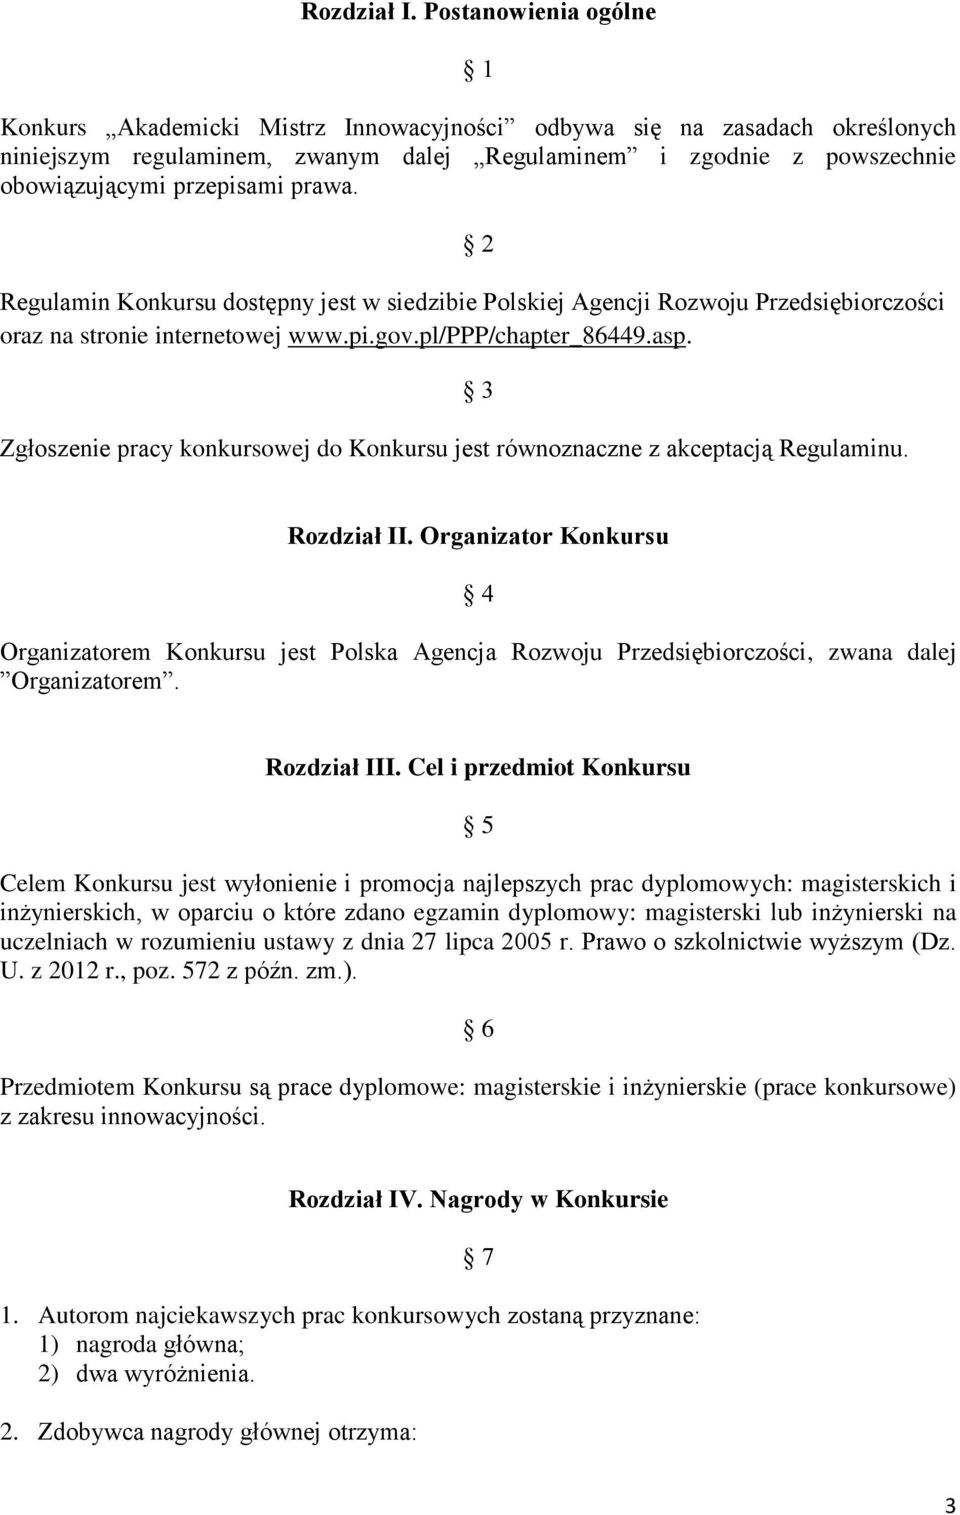 prawa. 2 Regulamin Konkursu dostępny jest w siedzibie Polskiej Agencji Rozwoju Przedsiębiorczości oraz na stronie internetowej www.pi.gov.pl/ppp/chapter_86449.asp.